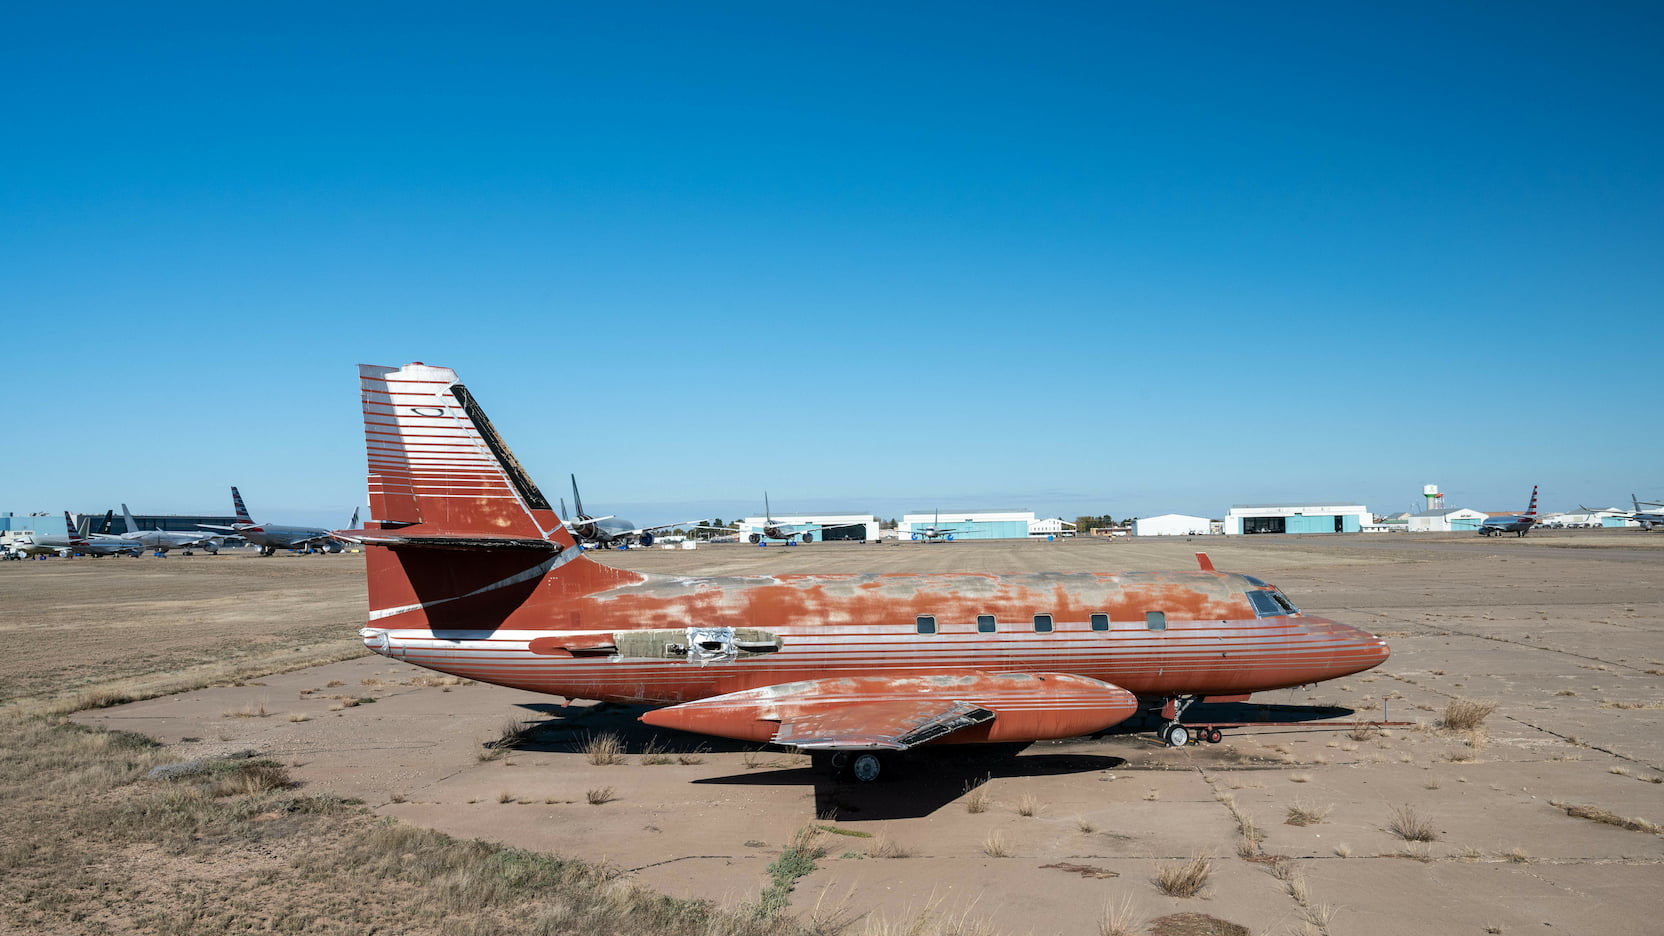 imagen 2 de Sale a subasta el jet privado que compró Elvis Presley en 1976.